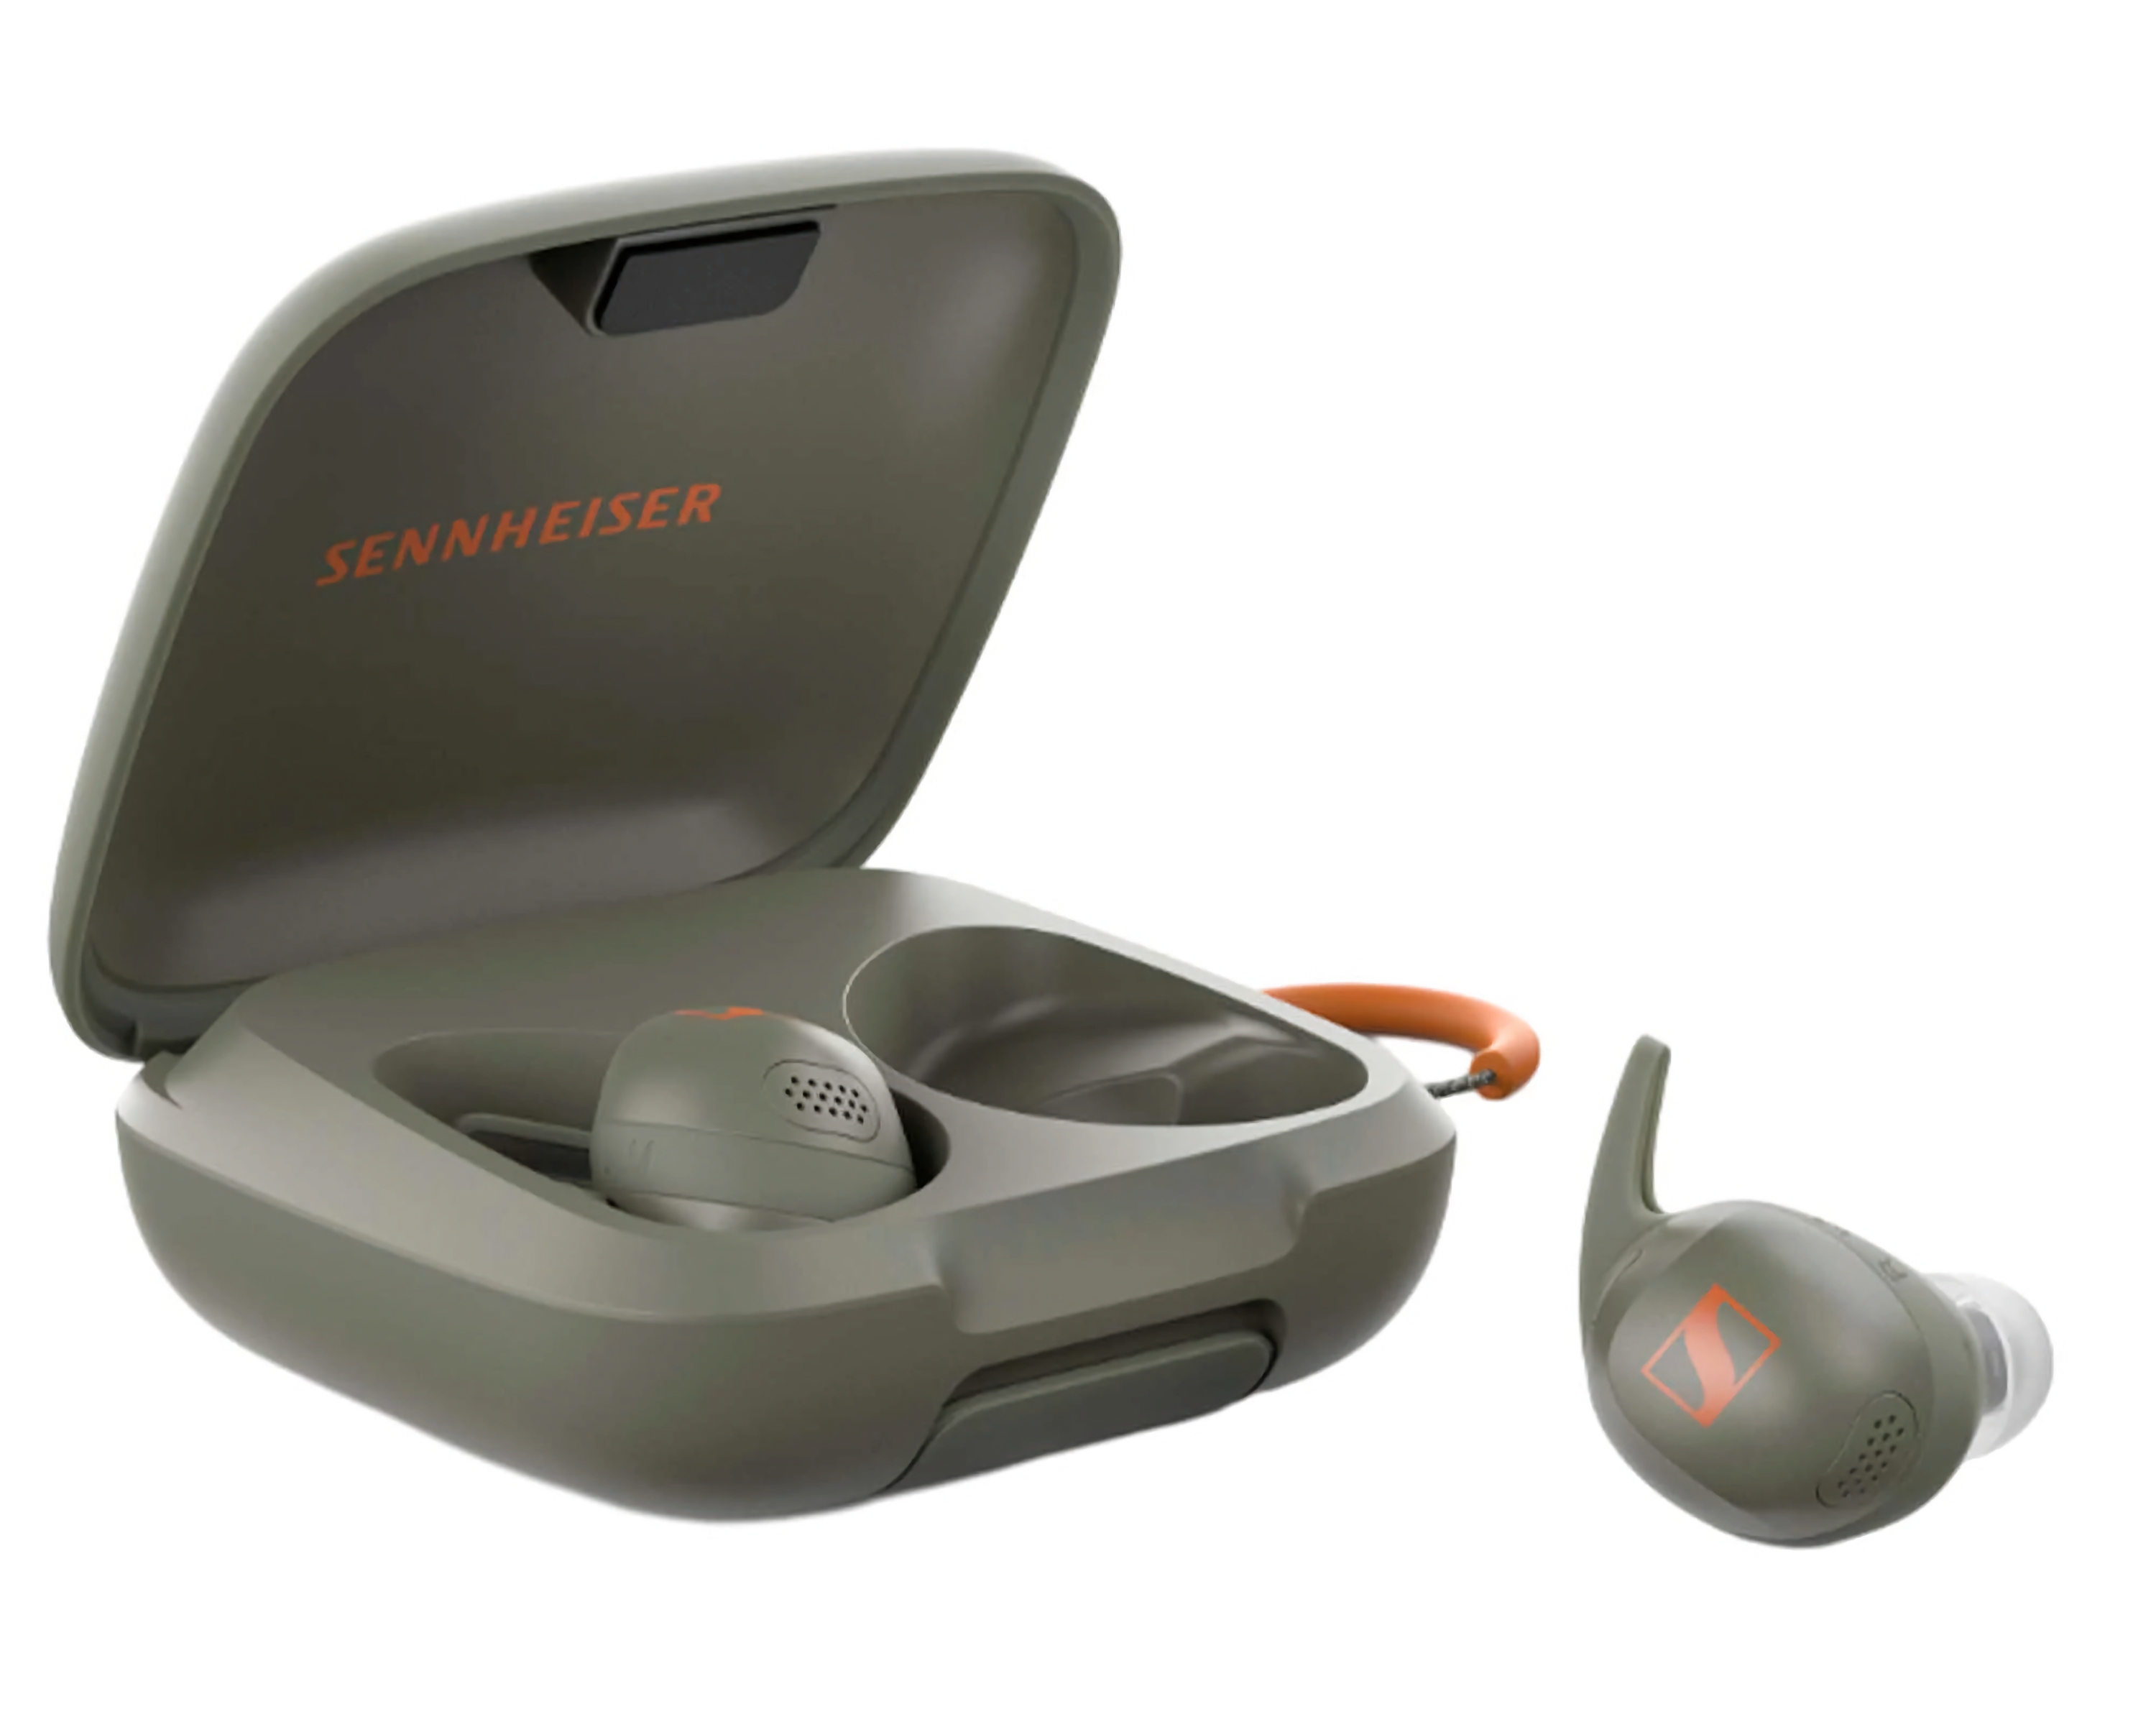 Le Sennheiser Momentum Sport avec mesure de la température corporelle et de la fréquence cardiaque est désormais en vente